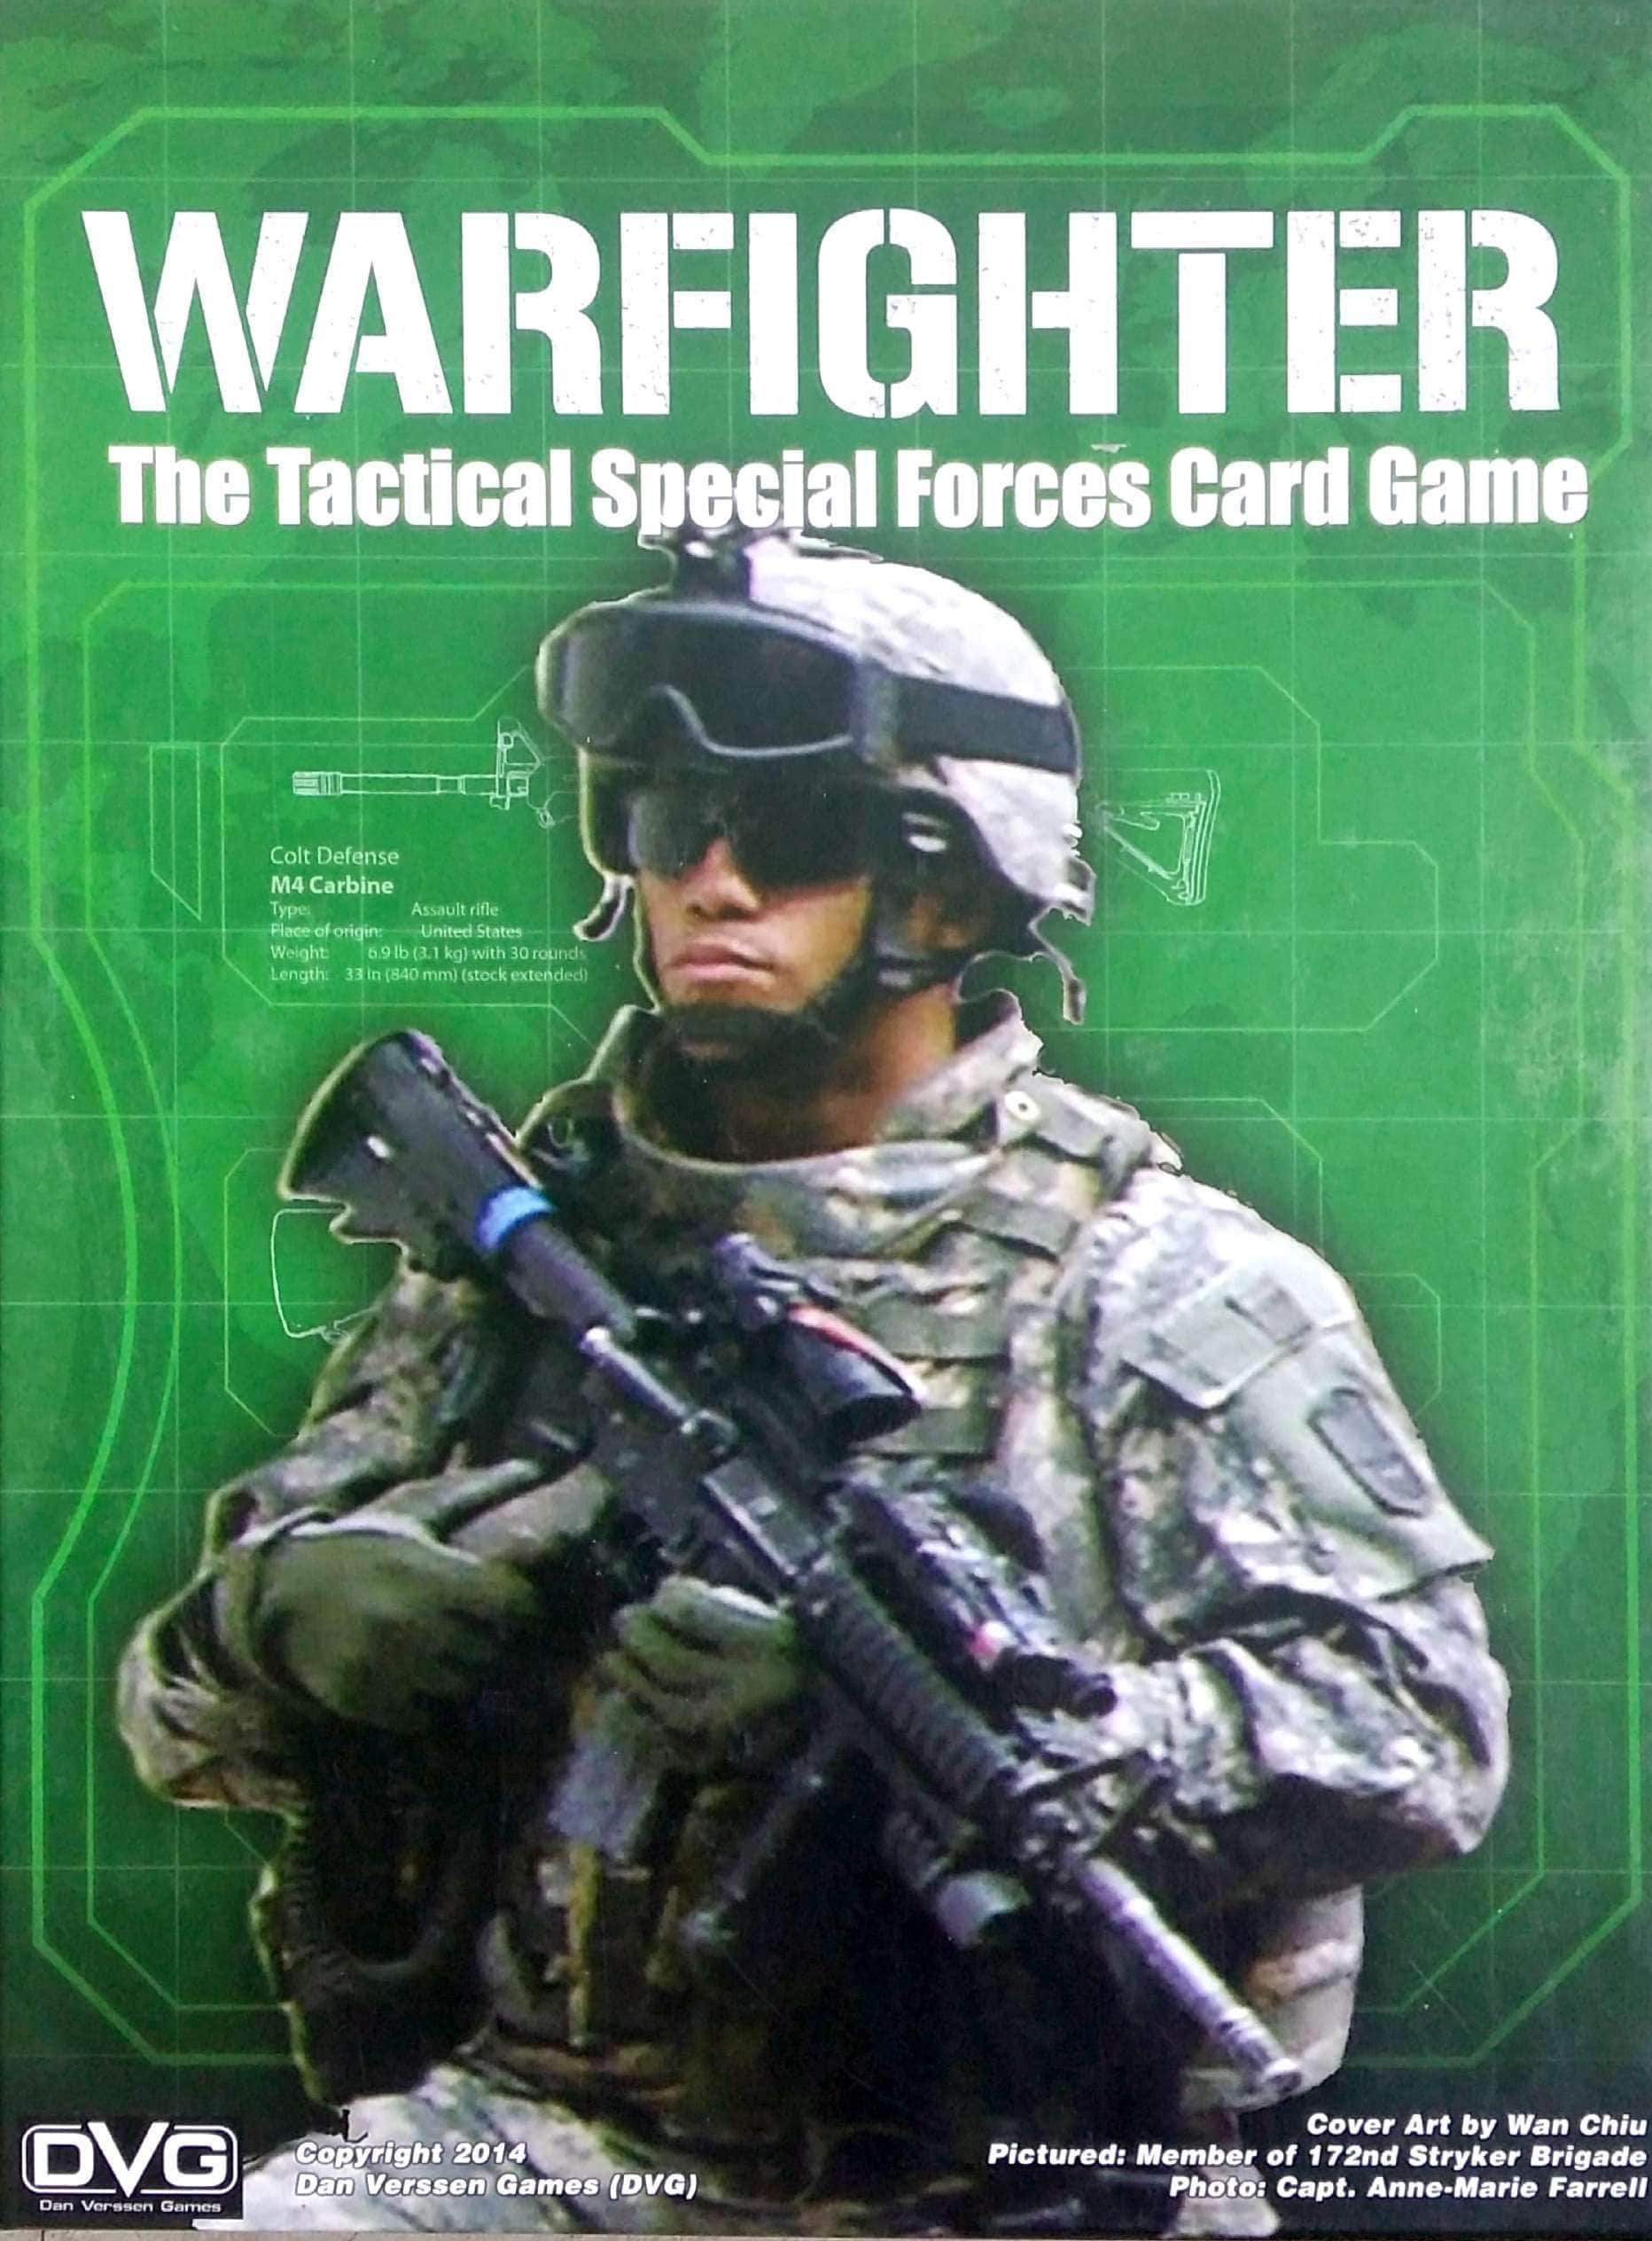 Warfighter: The Tactical Special Forces Card Game (Kickstarter Special) jogo de tabuleiro Kickstarter Dan Verssen Games (DVG) KS800088A